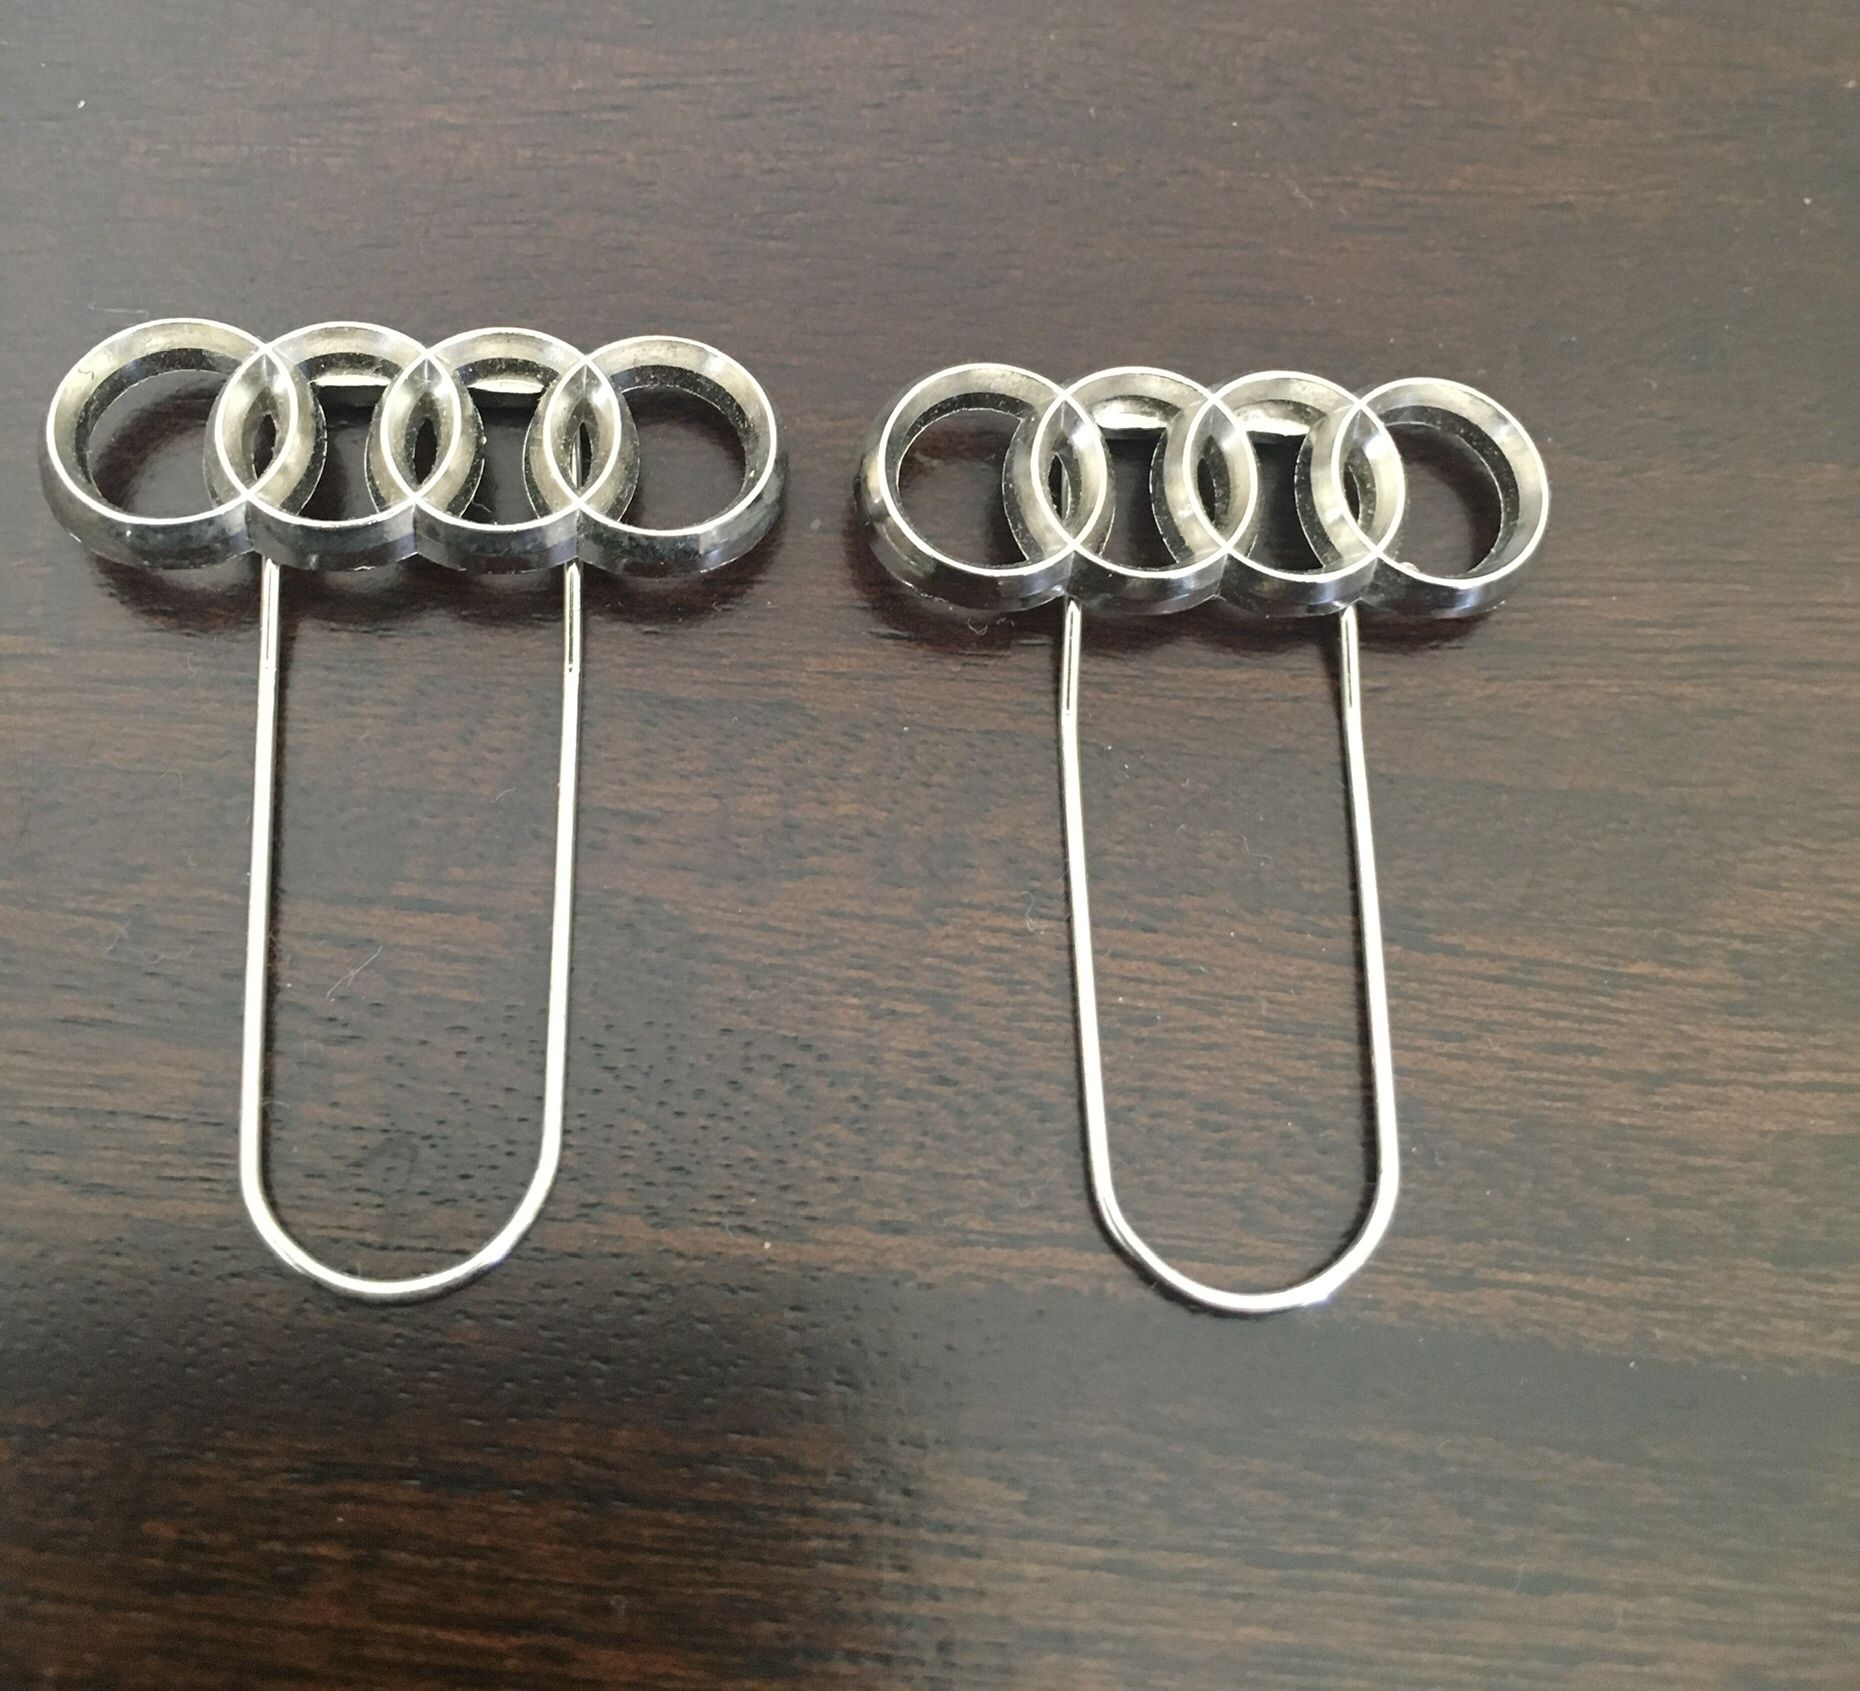 2 Audi clips